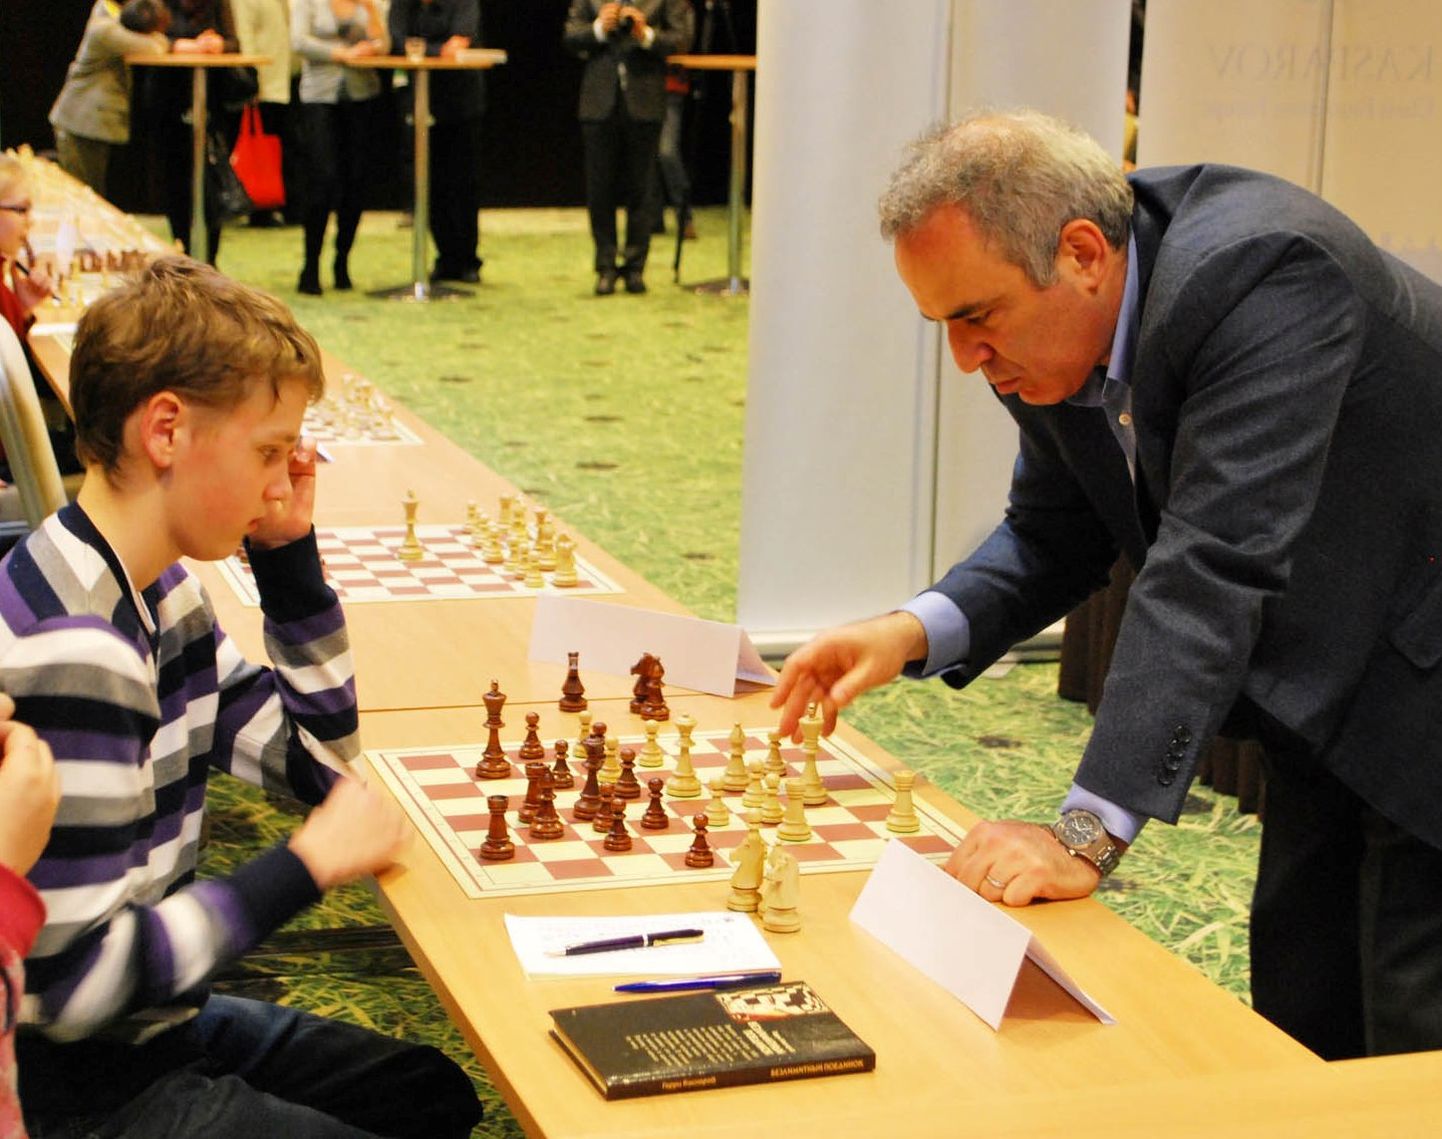 2012. kevadel mängis tollal 14aastane Ilja Siroš Talinnas simultaanis viiki eksmaailmameister Garri Kasparoviga. Nüüd täitis ta rahvusvahelise meistri normi. ALEKSANDR SIROŠ